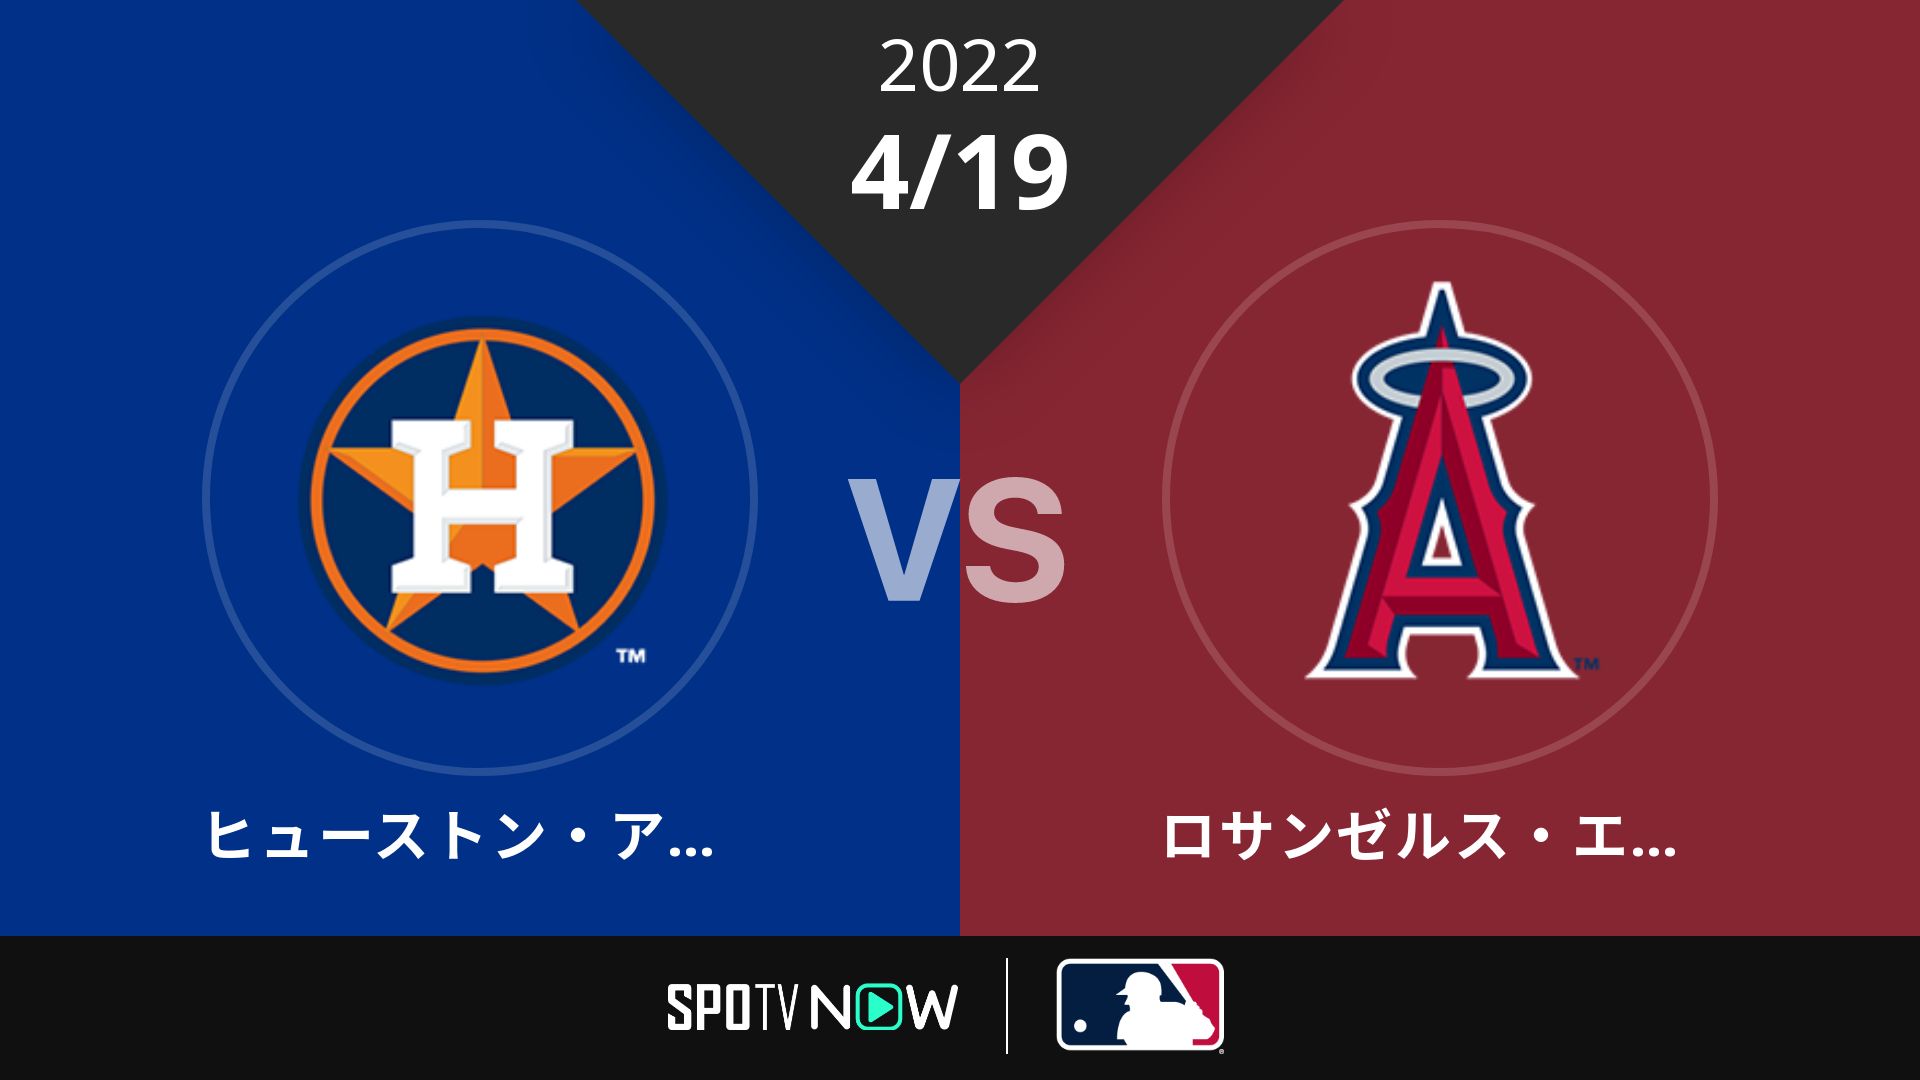 2022/4/19 アストロズ vs エンゼルス [MLB]